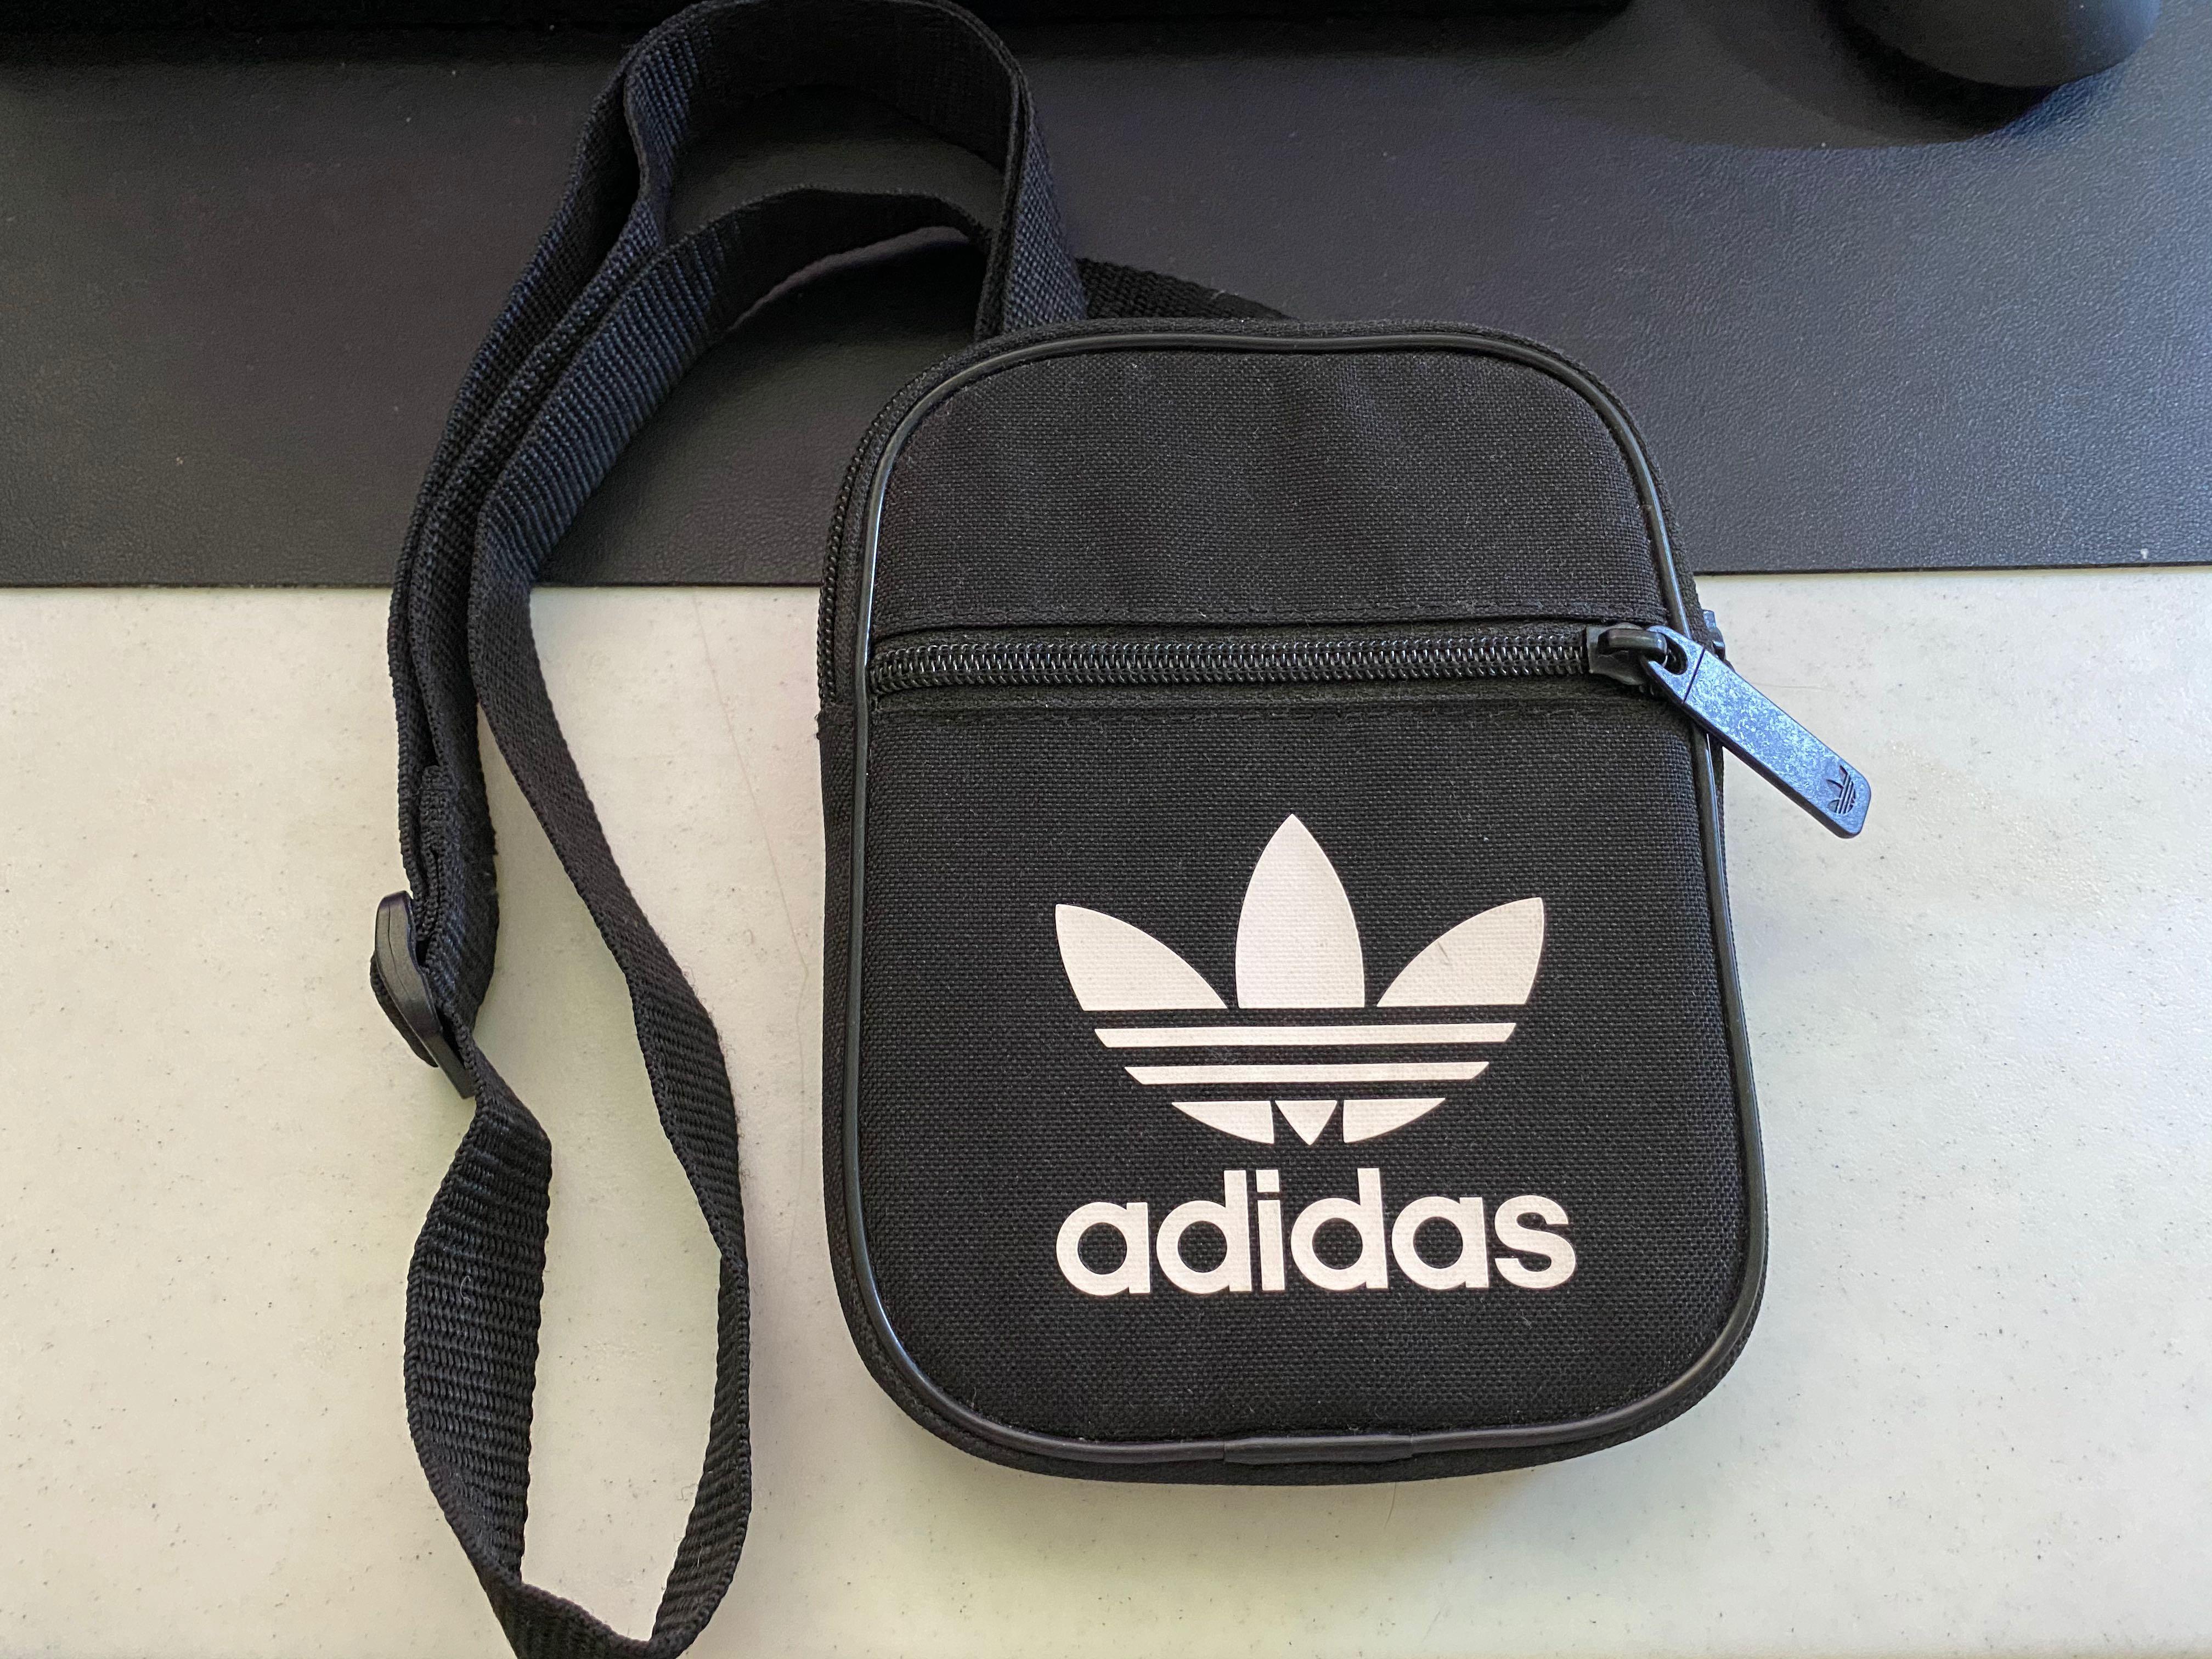 adidas small sling bag